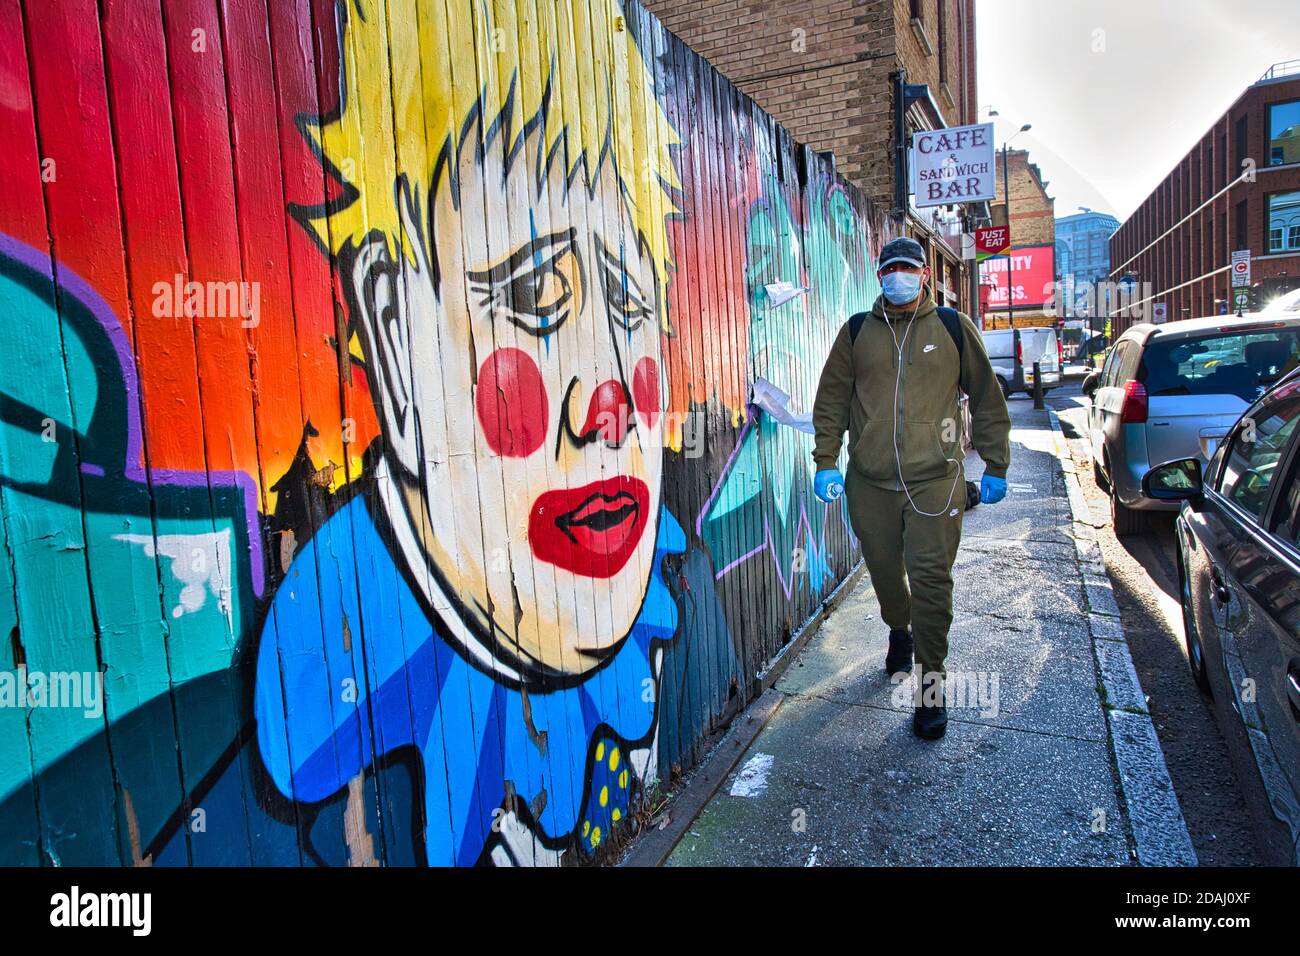 GRANDE-BRETAGNE / Angleterre / Londres / UN homme avec masque de visage marche après des graffitis dépeignant le Premier ministre Boris Johnson comme un clown, près de Brick Lane . Banque D'Images